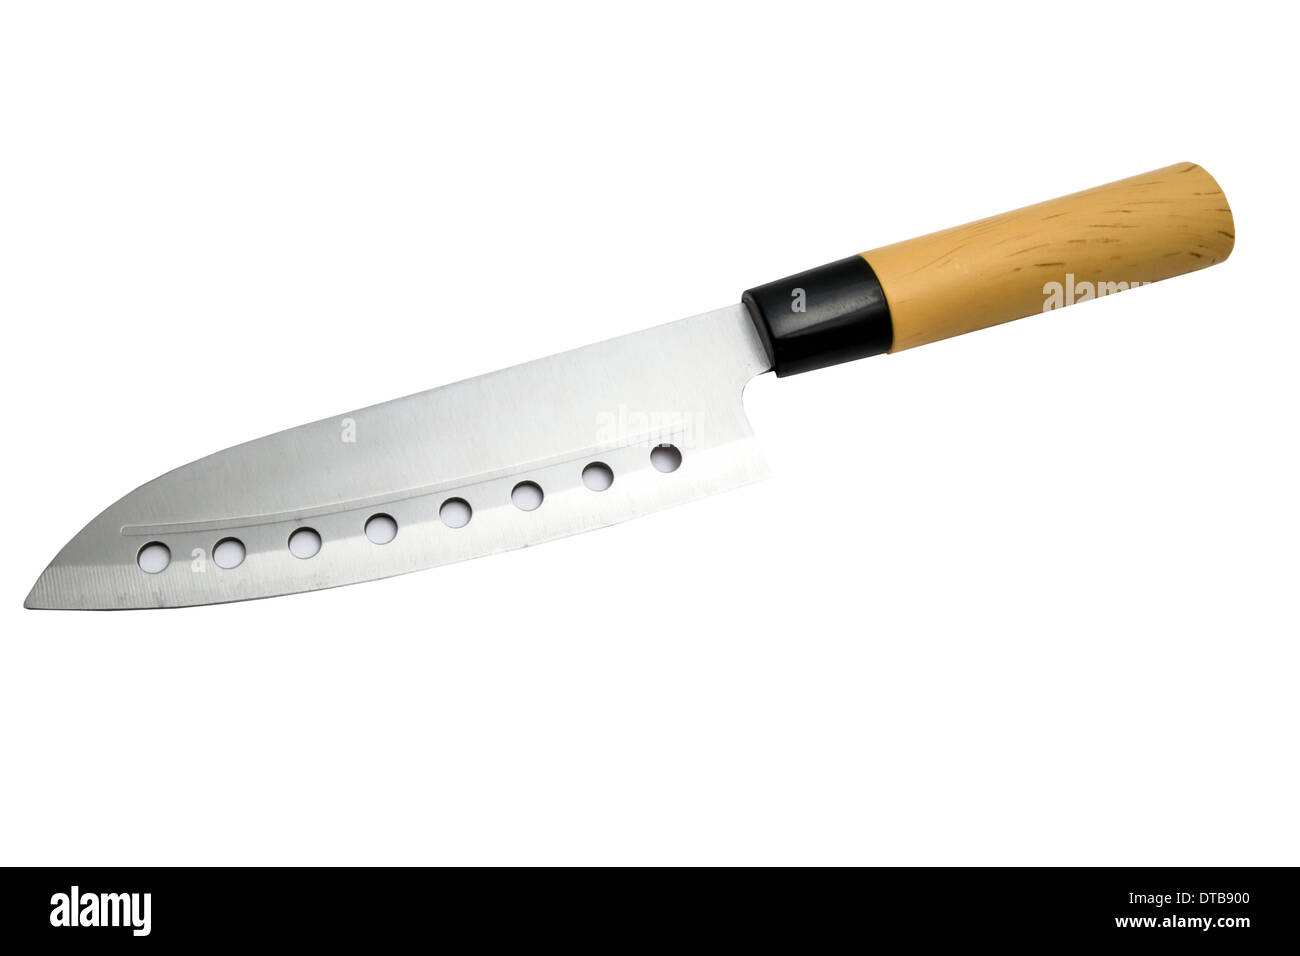 Kitchen knife isolated on white background Stock Photo